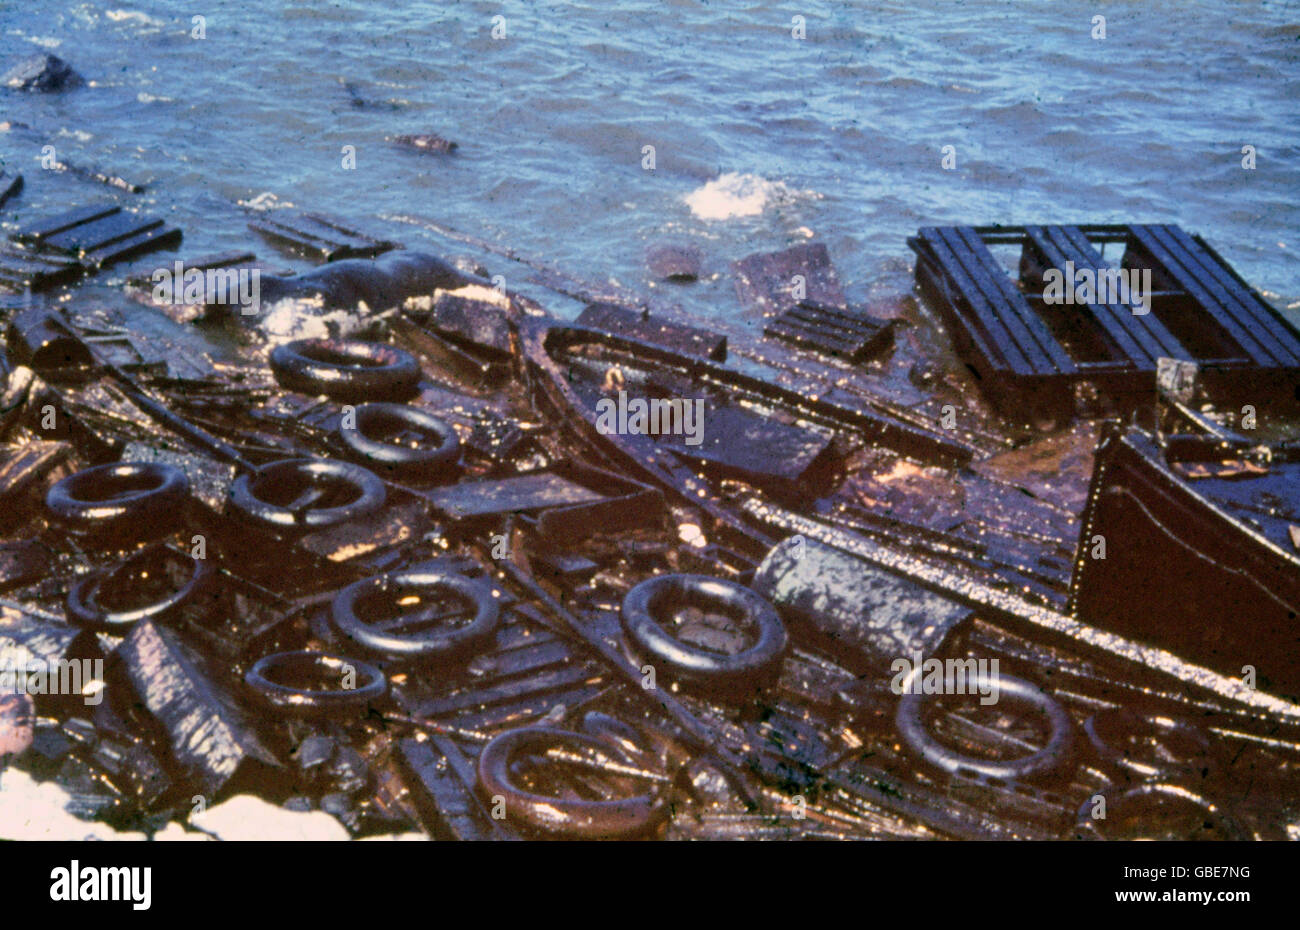 Veranstaltungen, 2. Weltkrieg, Frankreich, Dünkirchen, Juni 1940, zerstörte Boote und Schutt am Strand, Zusatzrechte-Clearences-nicht verfügbar Stockfoto